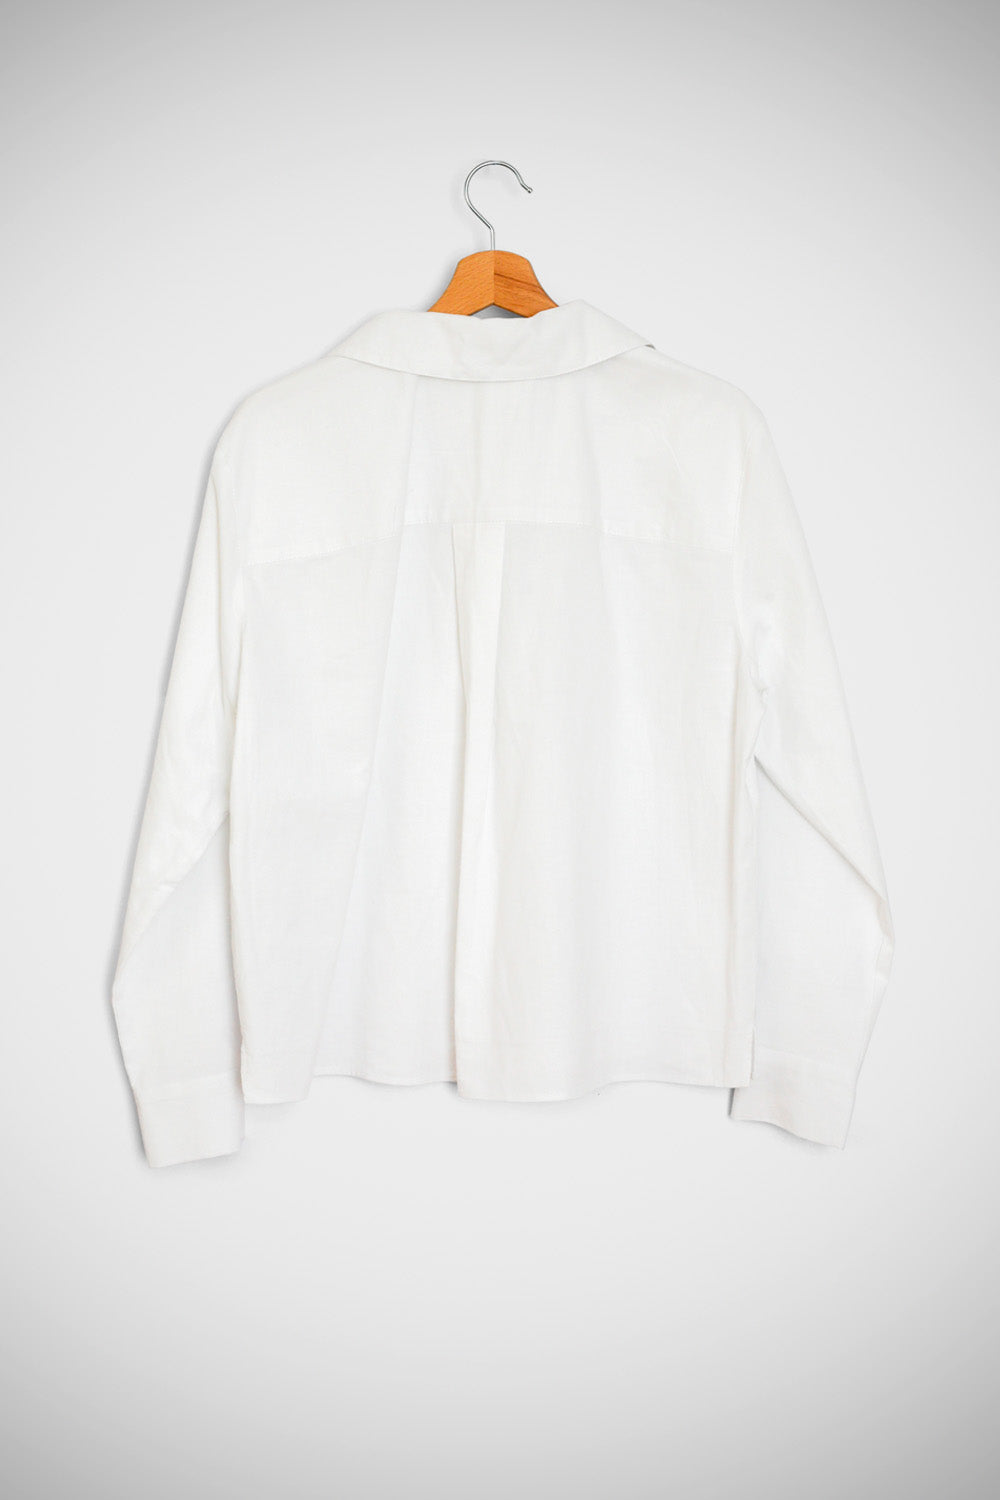 Secret White Shirt